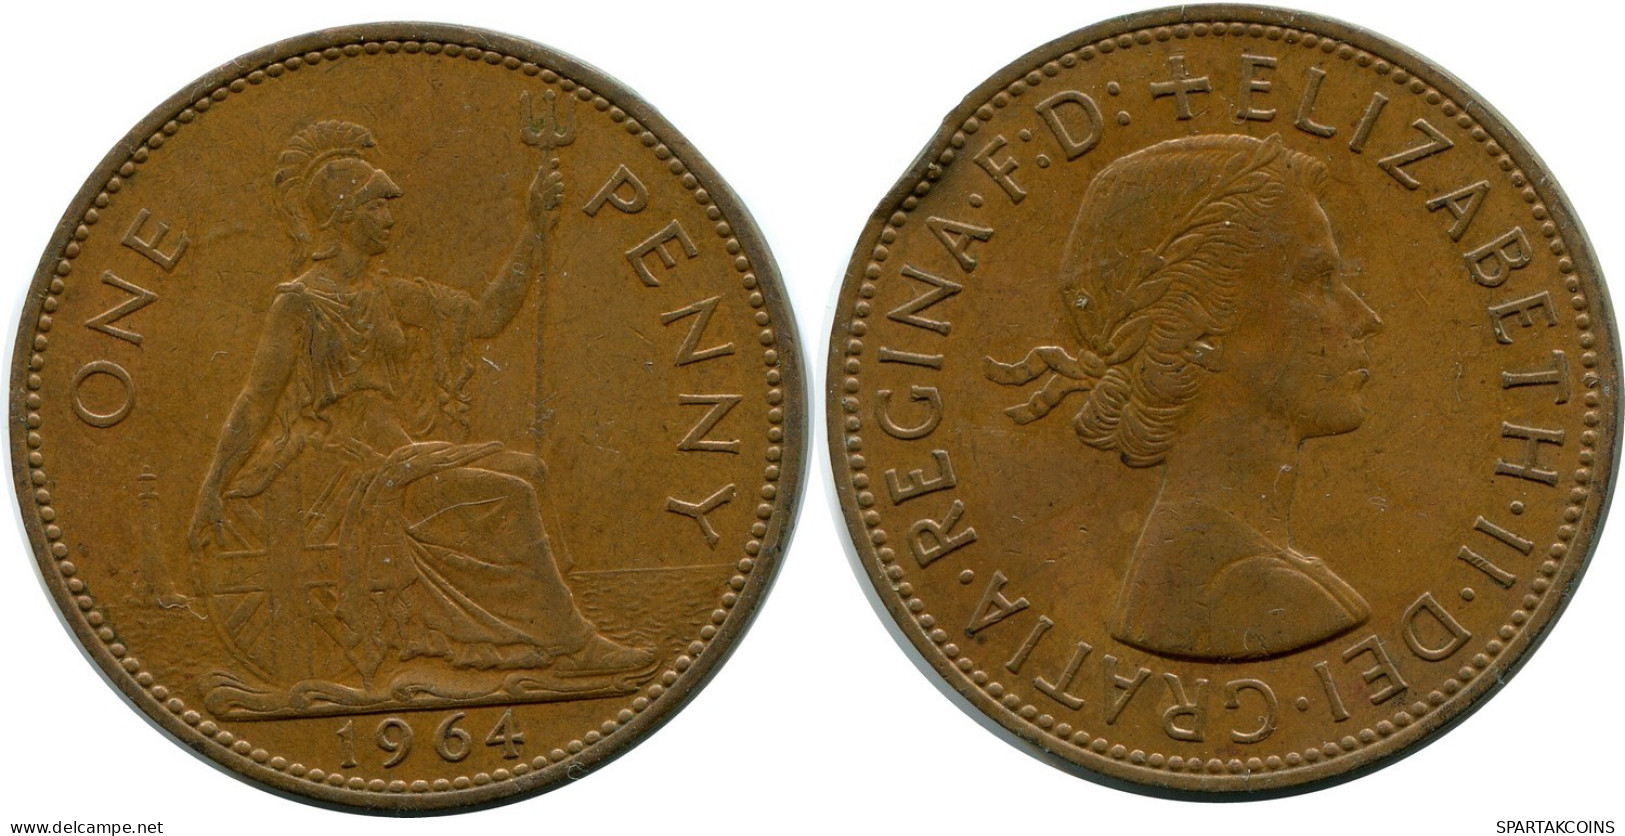 PENNY 1964 UK GROßBRITANNIEN GREAT BRITAIN Münze #AZ639.D.A - D. 1 Penny